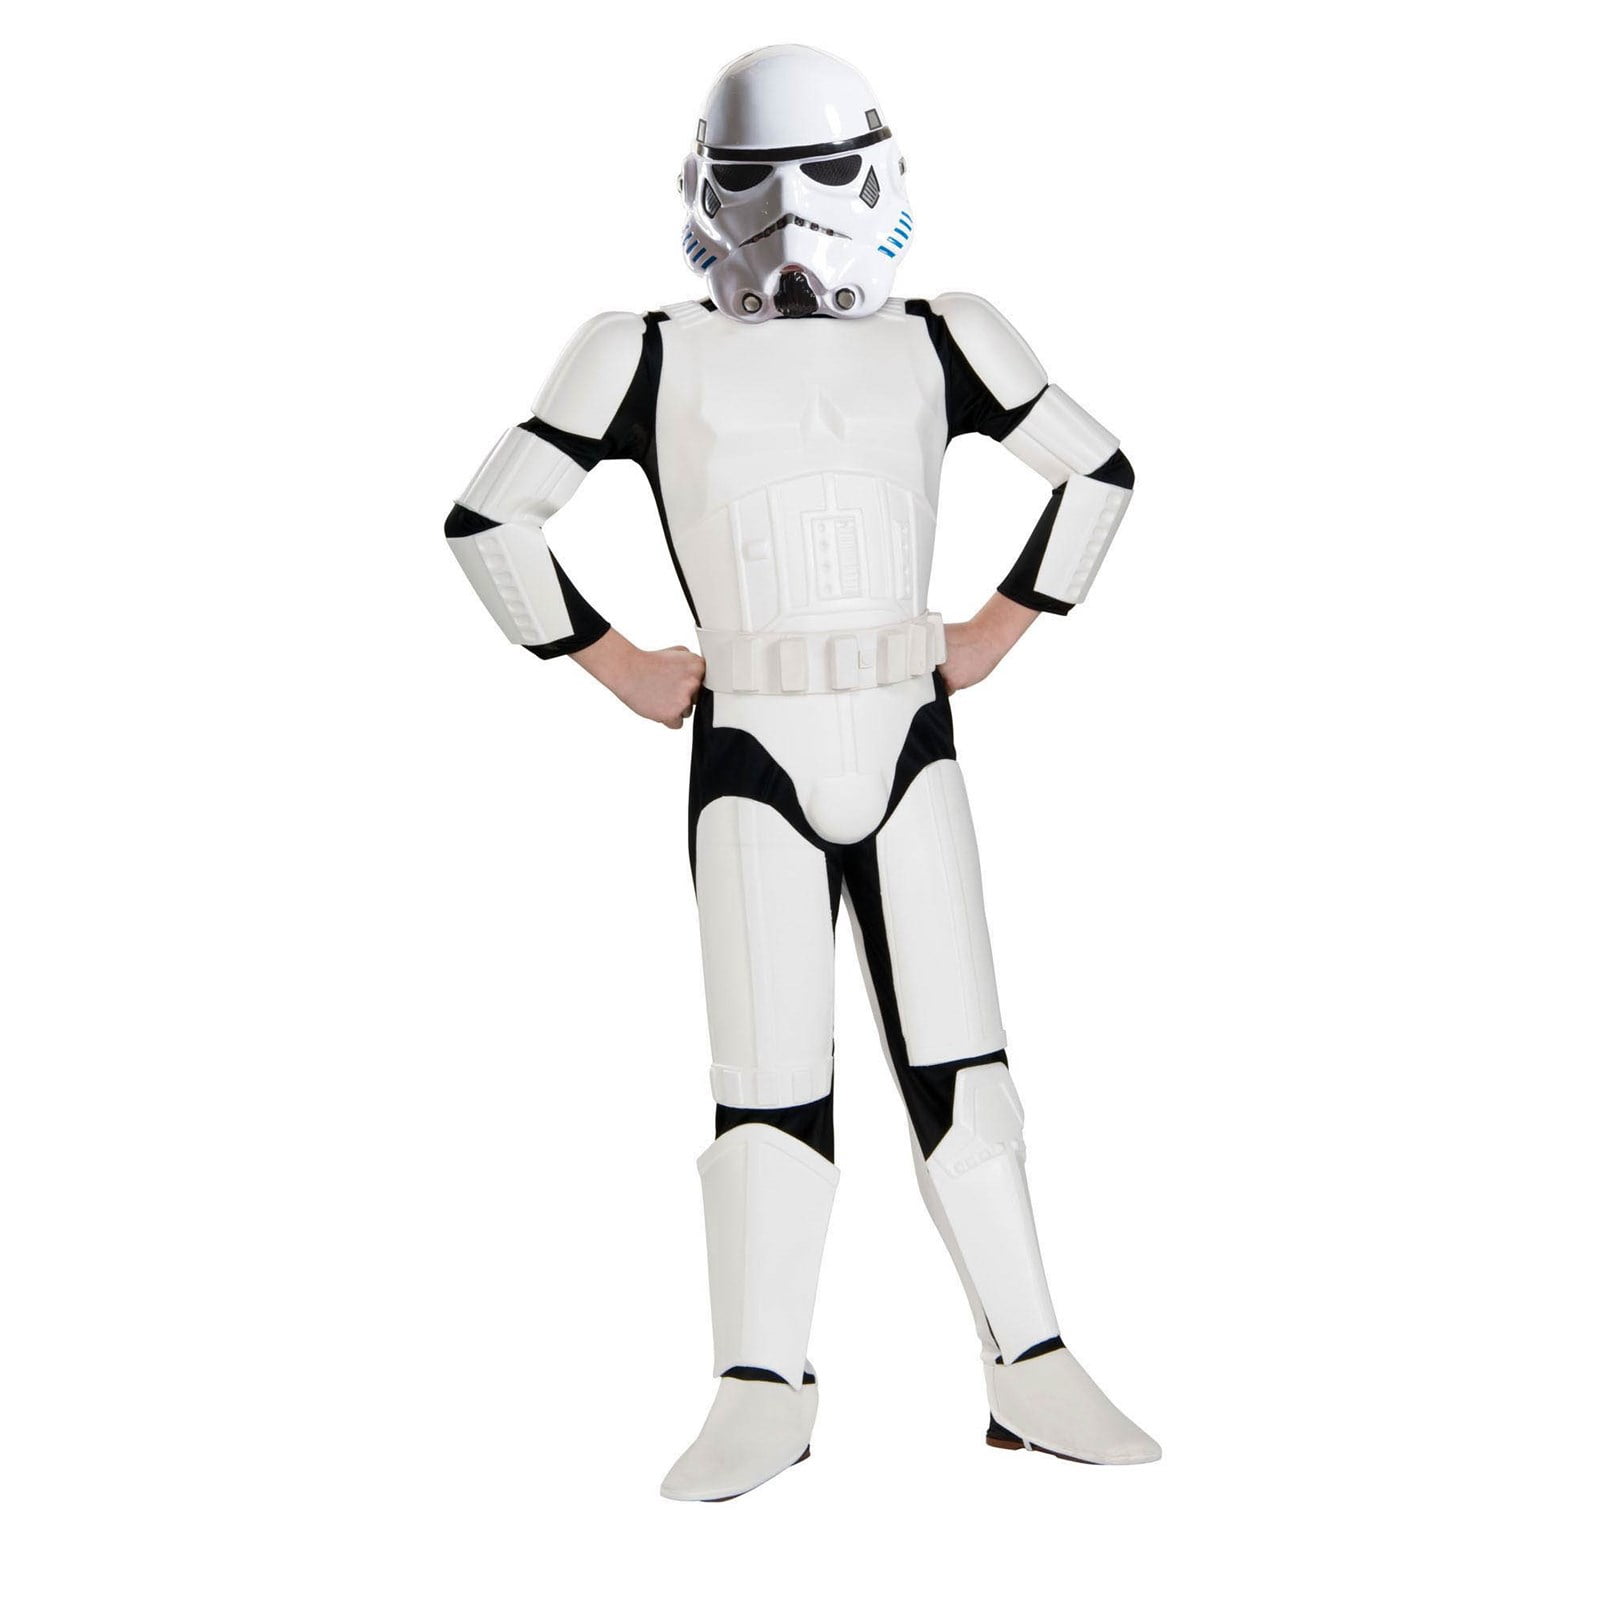 kids star wars dlx stormtrooper costume Force réveille 5' âge 8-10,HGT 4' 8" lg